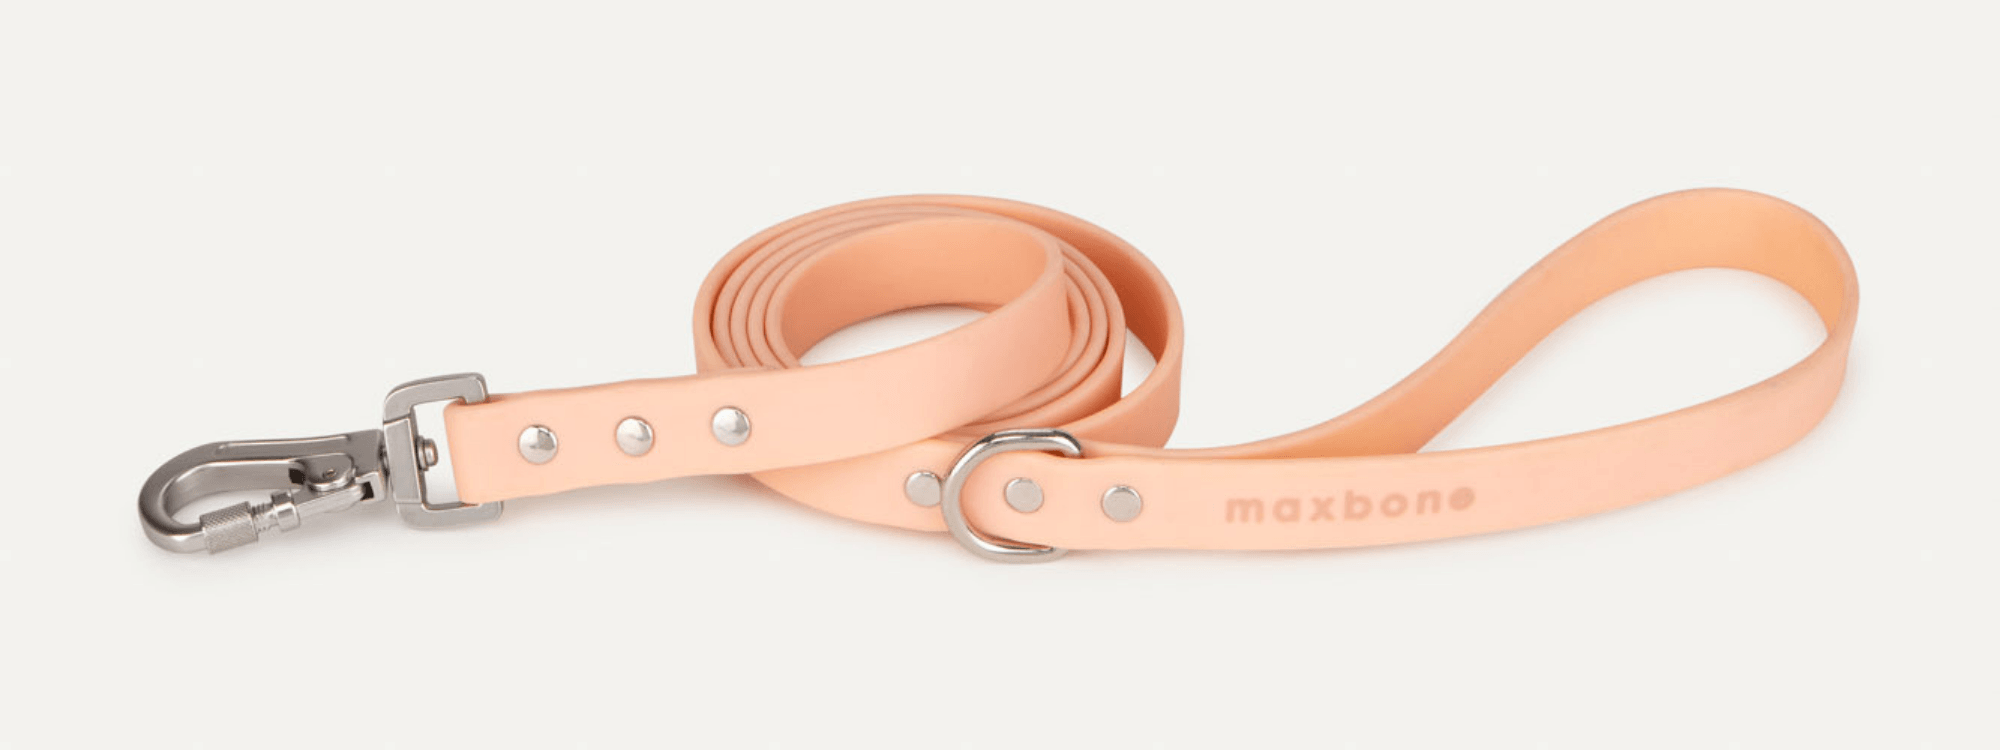 Bundle Up | maxbone